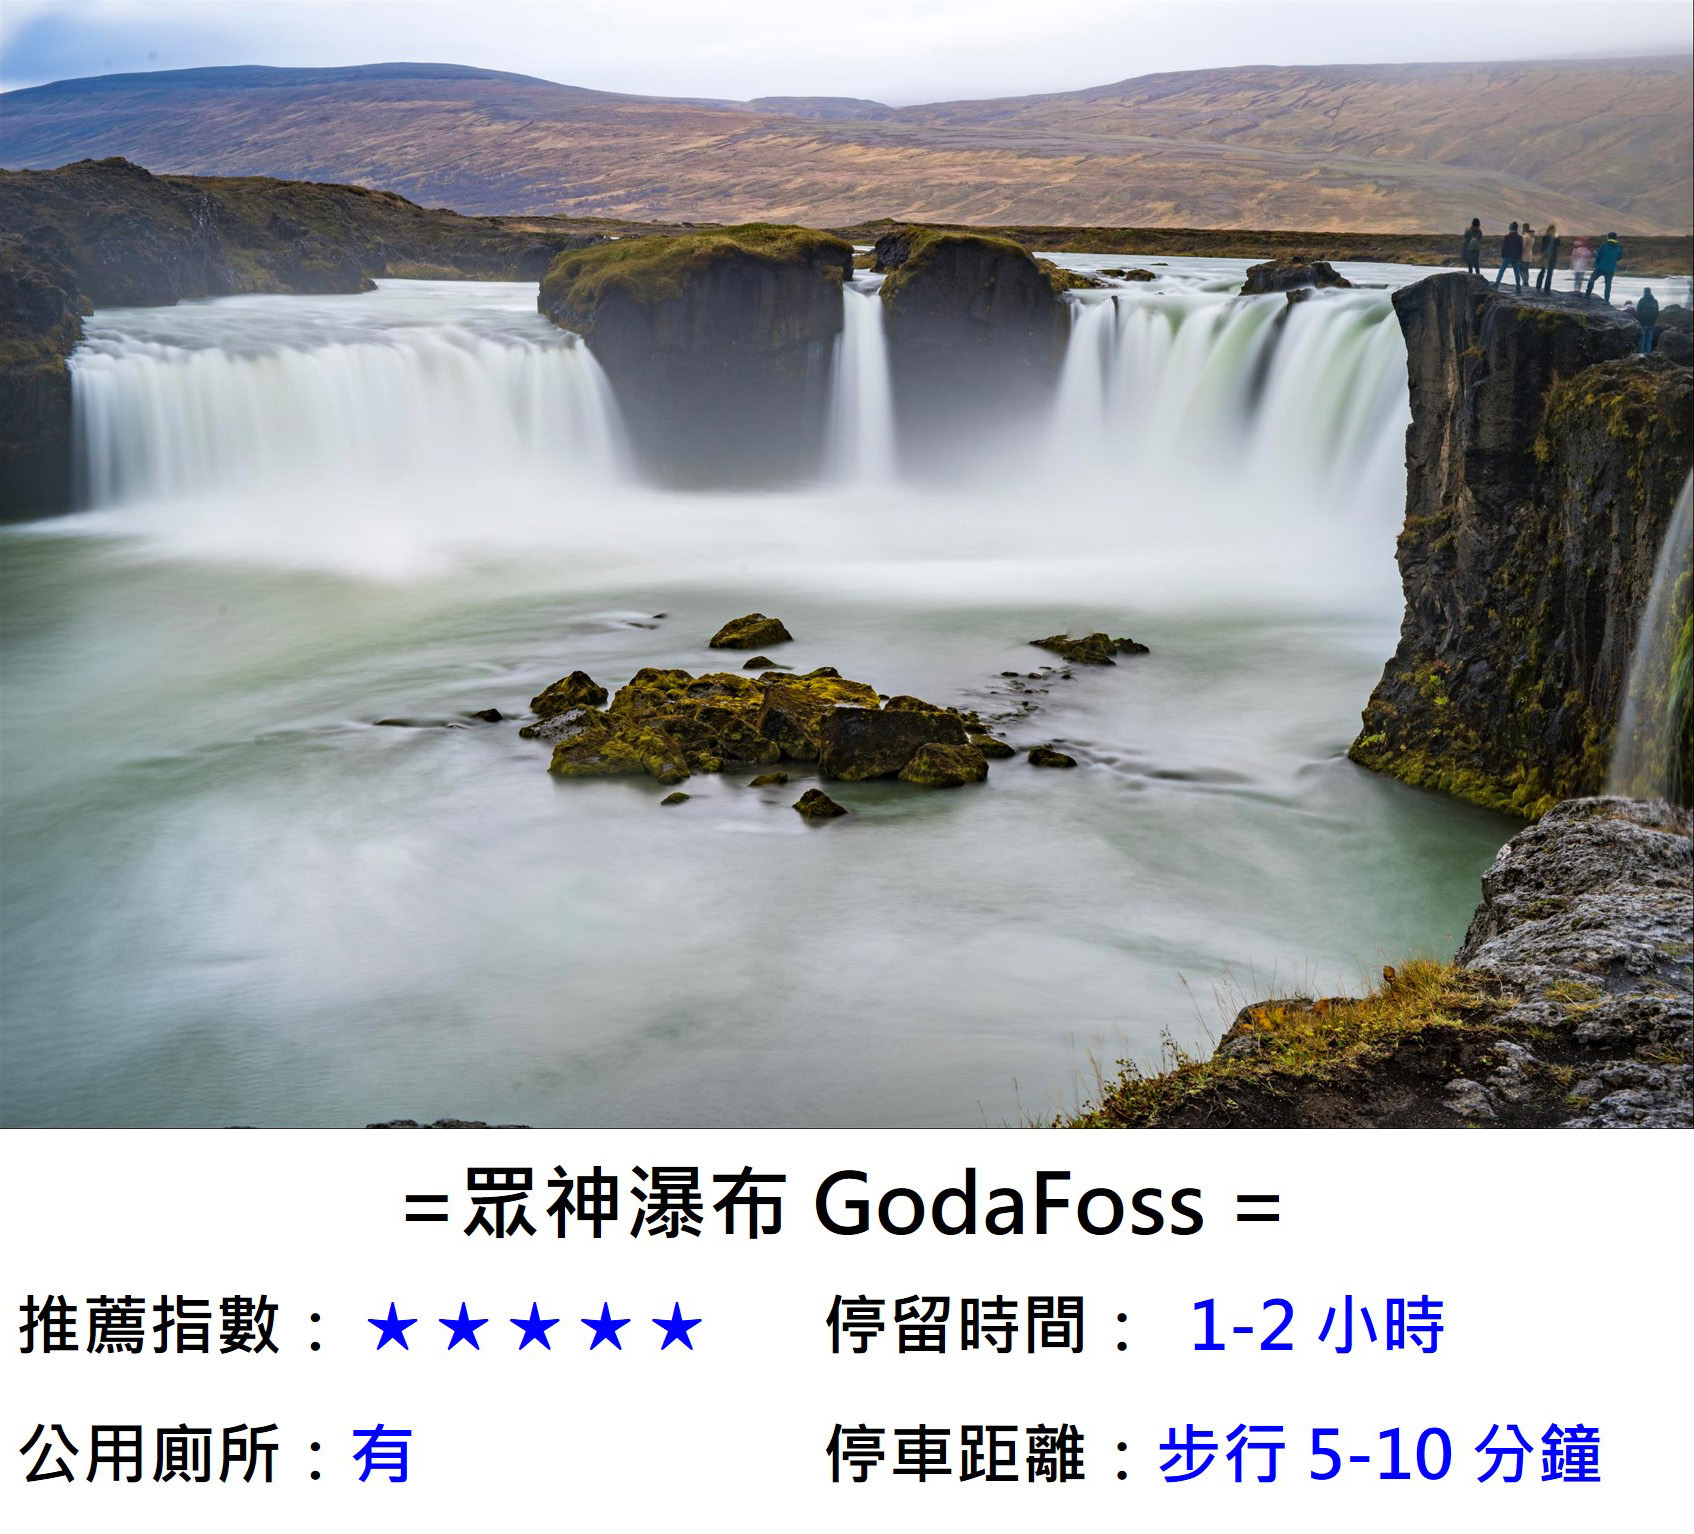 [冰島/北岸] 眾神瀑布 GodaFoss ，冰島人信仰的轉折，並非是神話般眾神匯集的傳說，